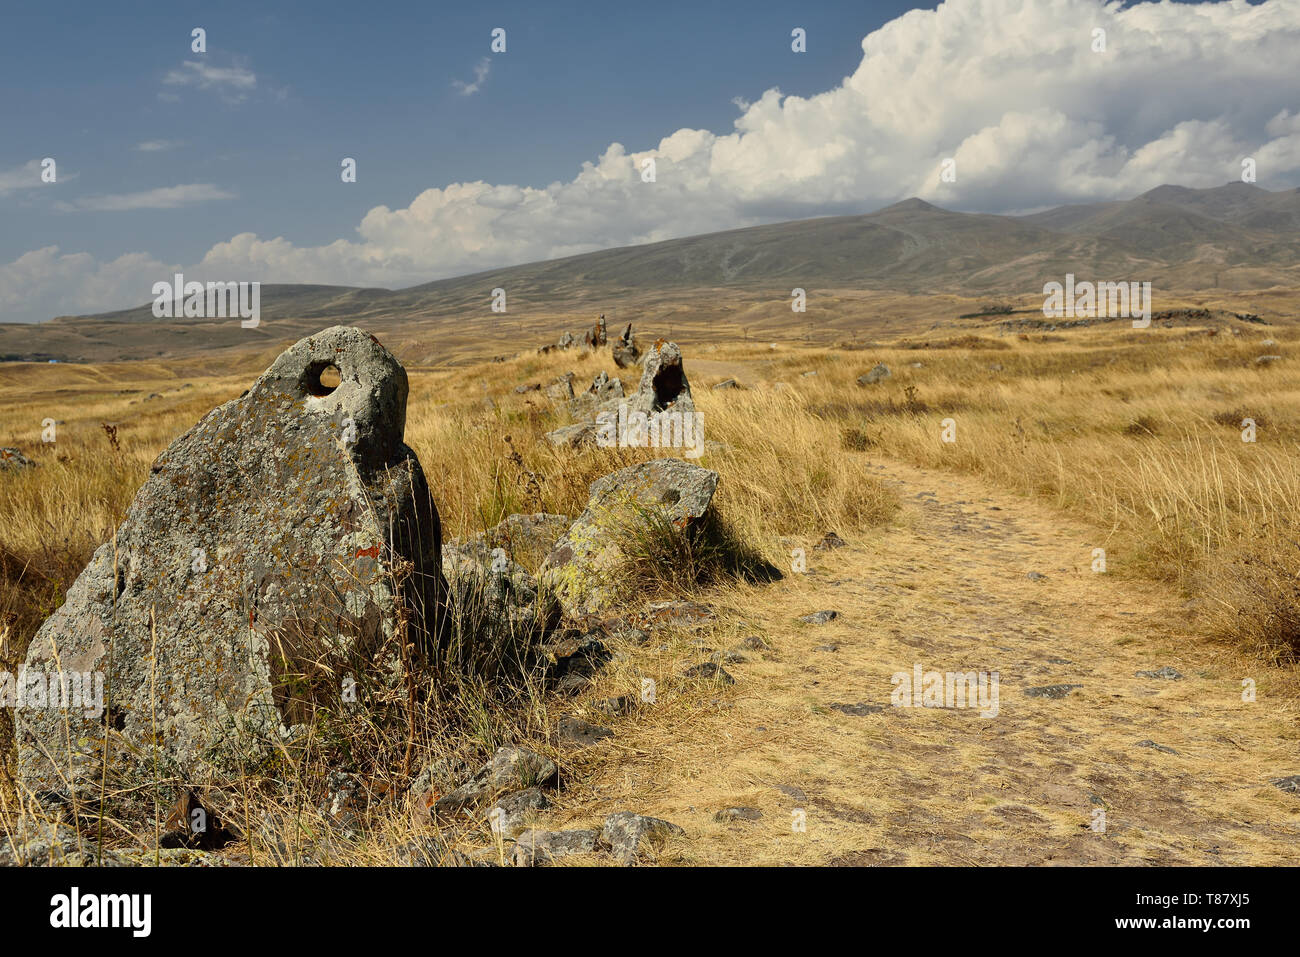 Zorats Karer - Stonehenge arménien ou Karahunj ancien observatoire près de Sisian, Arménie. Banque D'Images